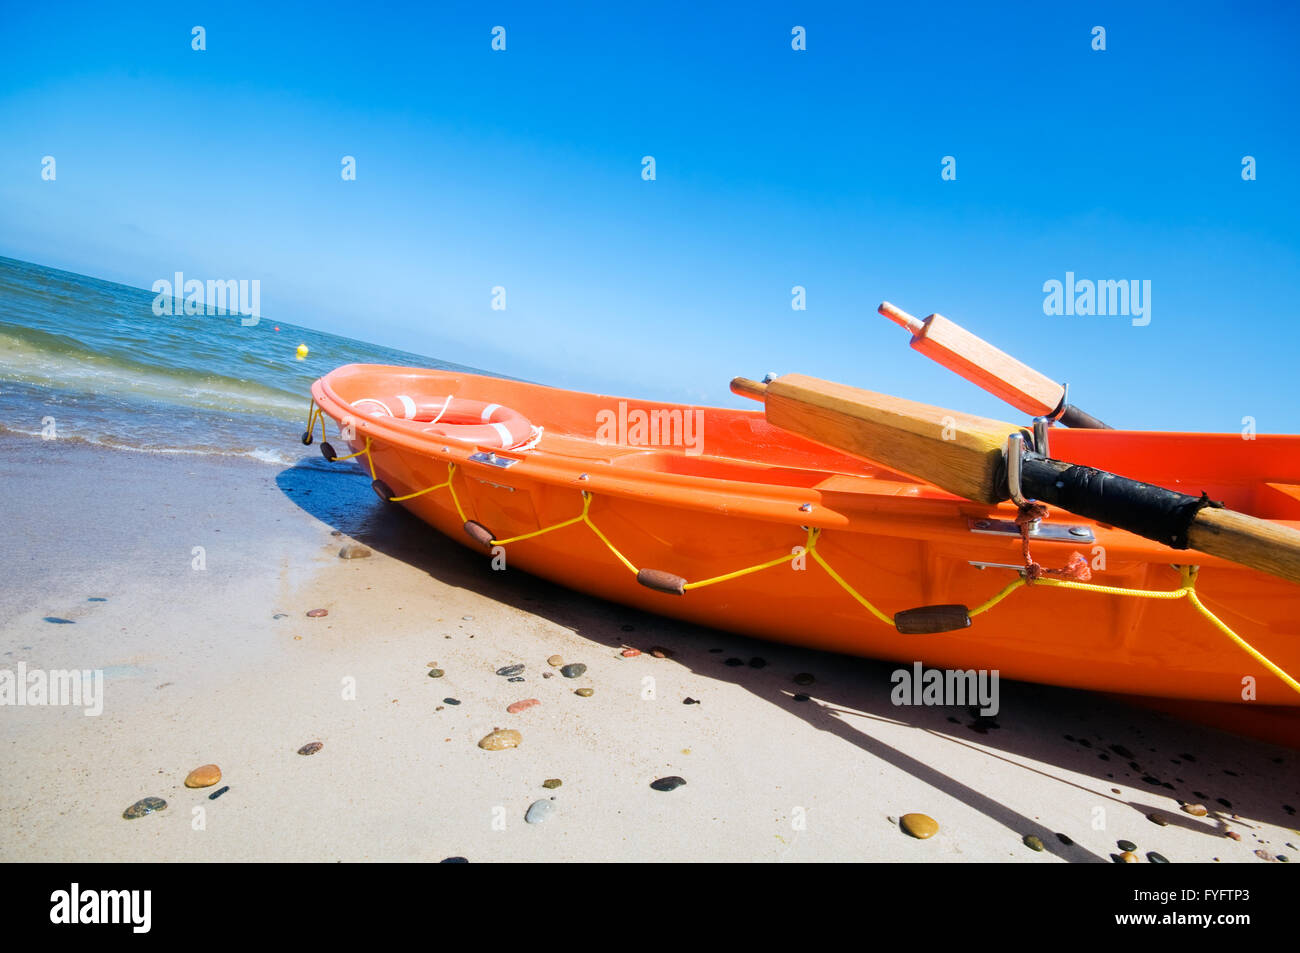 Orange rescue boat by the sea Stock Photo - Alamy